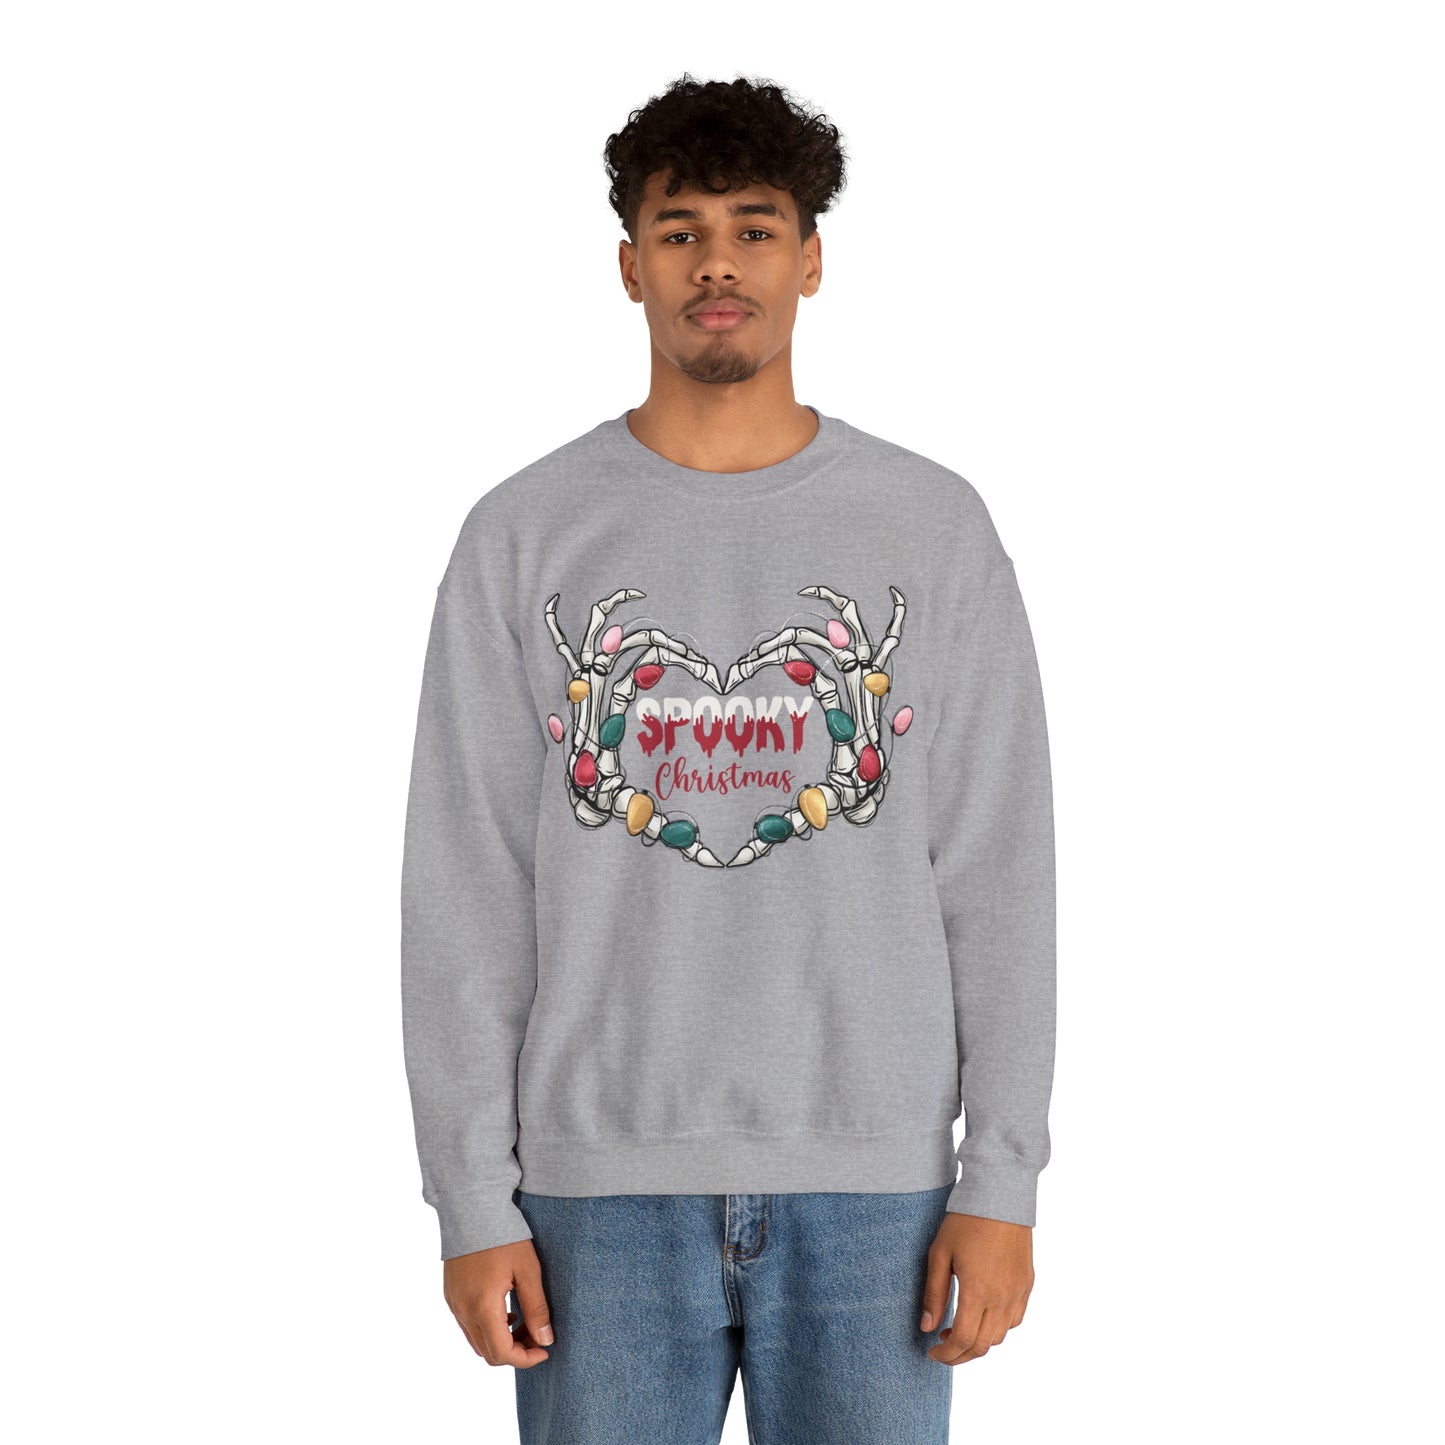 Spooky Christmas Sweatshirt